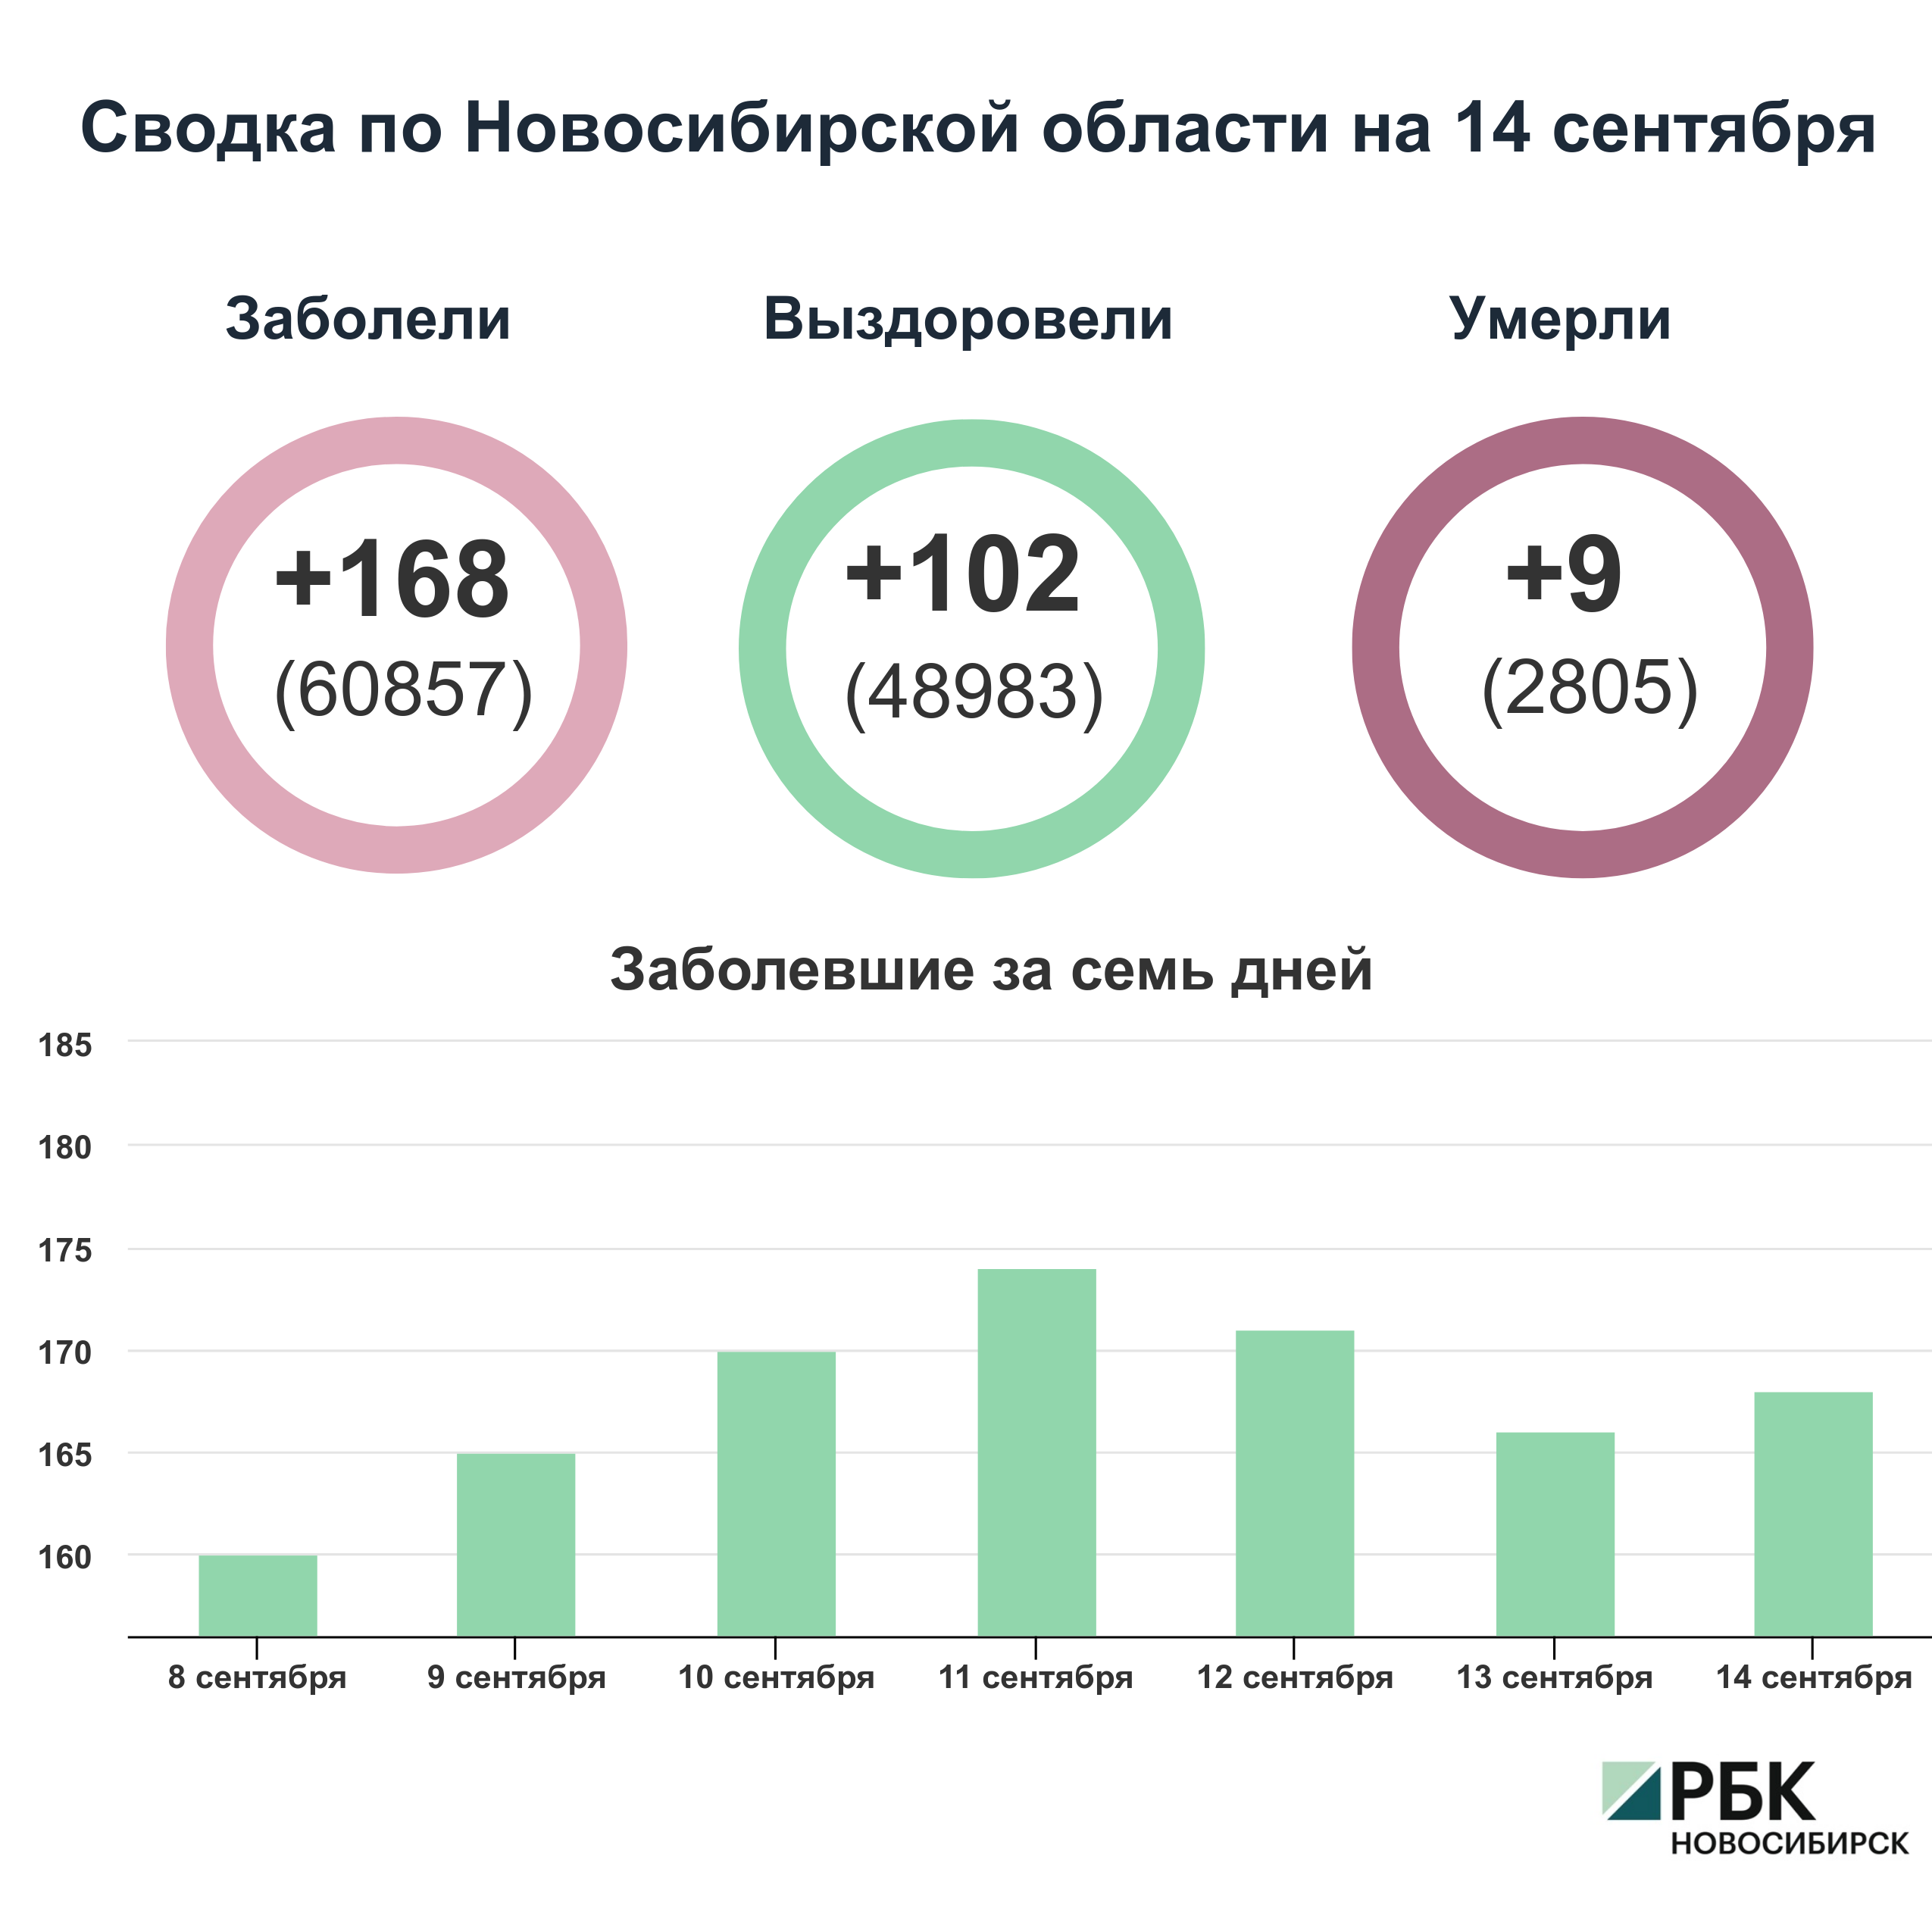 Коронавирус в Новосибирске: сводка на 14 сентября